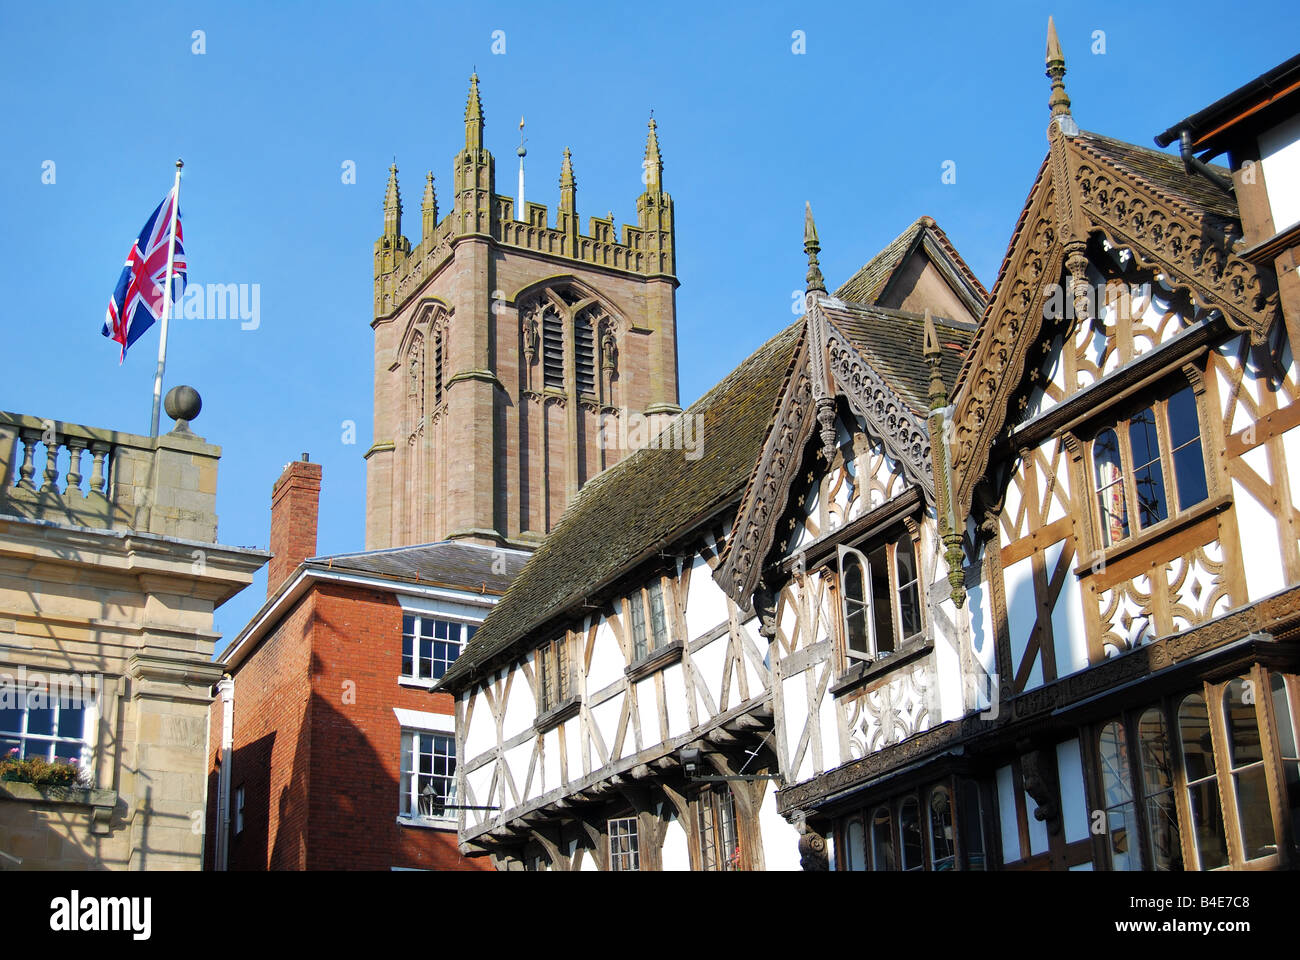 Tudor house façades et clocher de l'église St.Laurence, rue Large, Ludlow, Shropshire, Angleterre, Royaume-Uni Banque D'Images